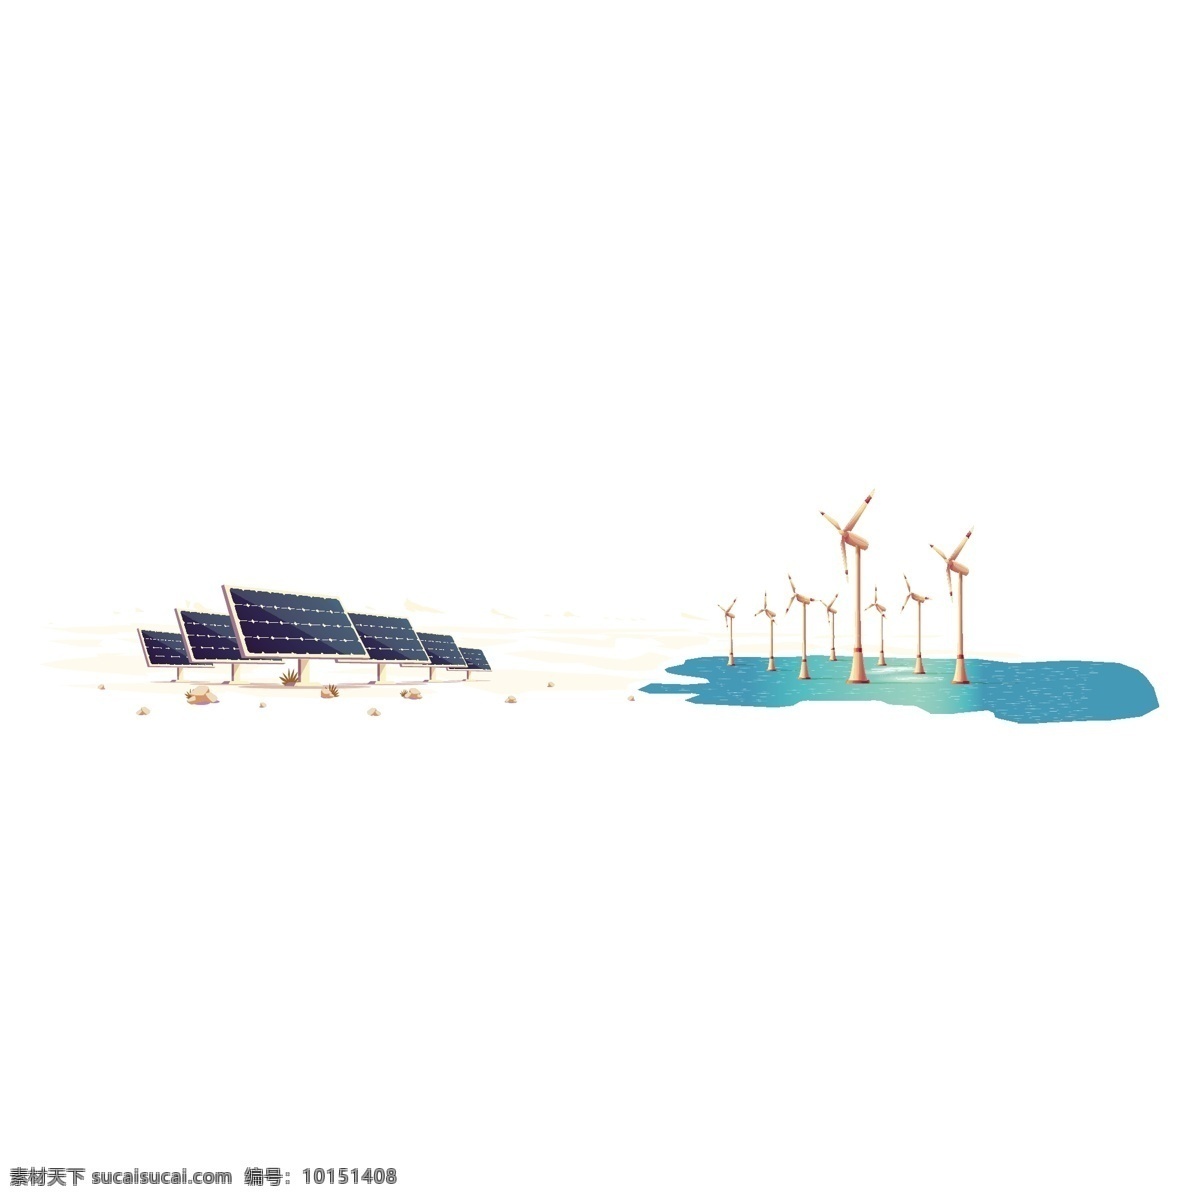 光合作用 矢量 卡通 资源 能源 能源资源 卡通资源 太阳能 发电 风力 风力发电 环境保护 环境能源